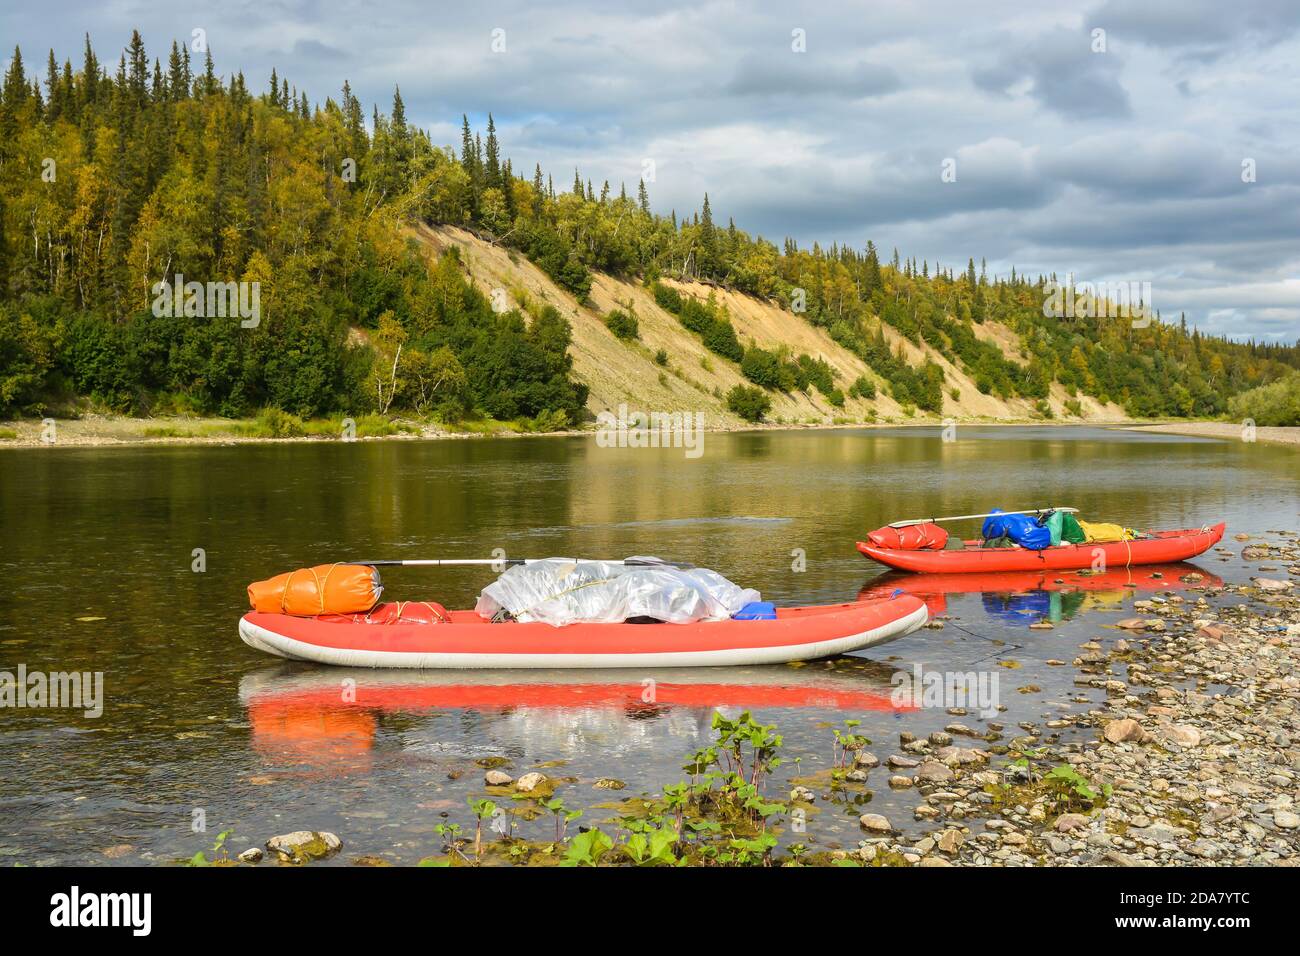 Kayak gonflable sur l'eau. Rafting touristique sur la rivière du nord. Banque D'Images